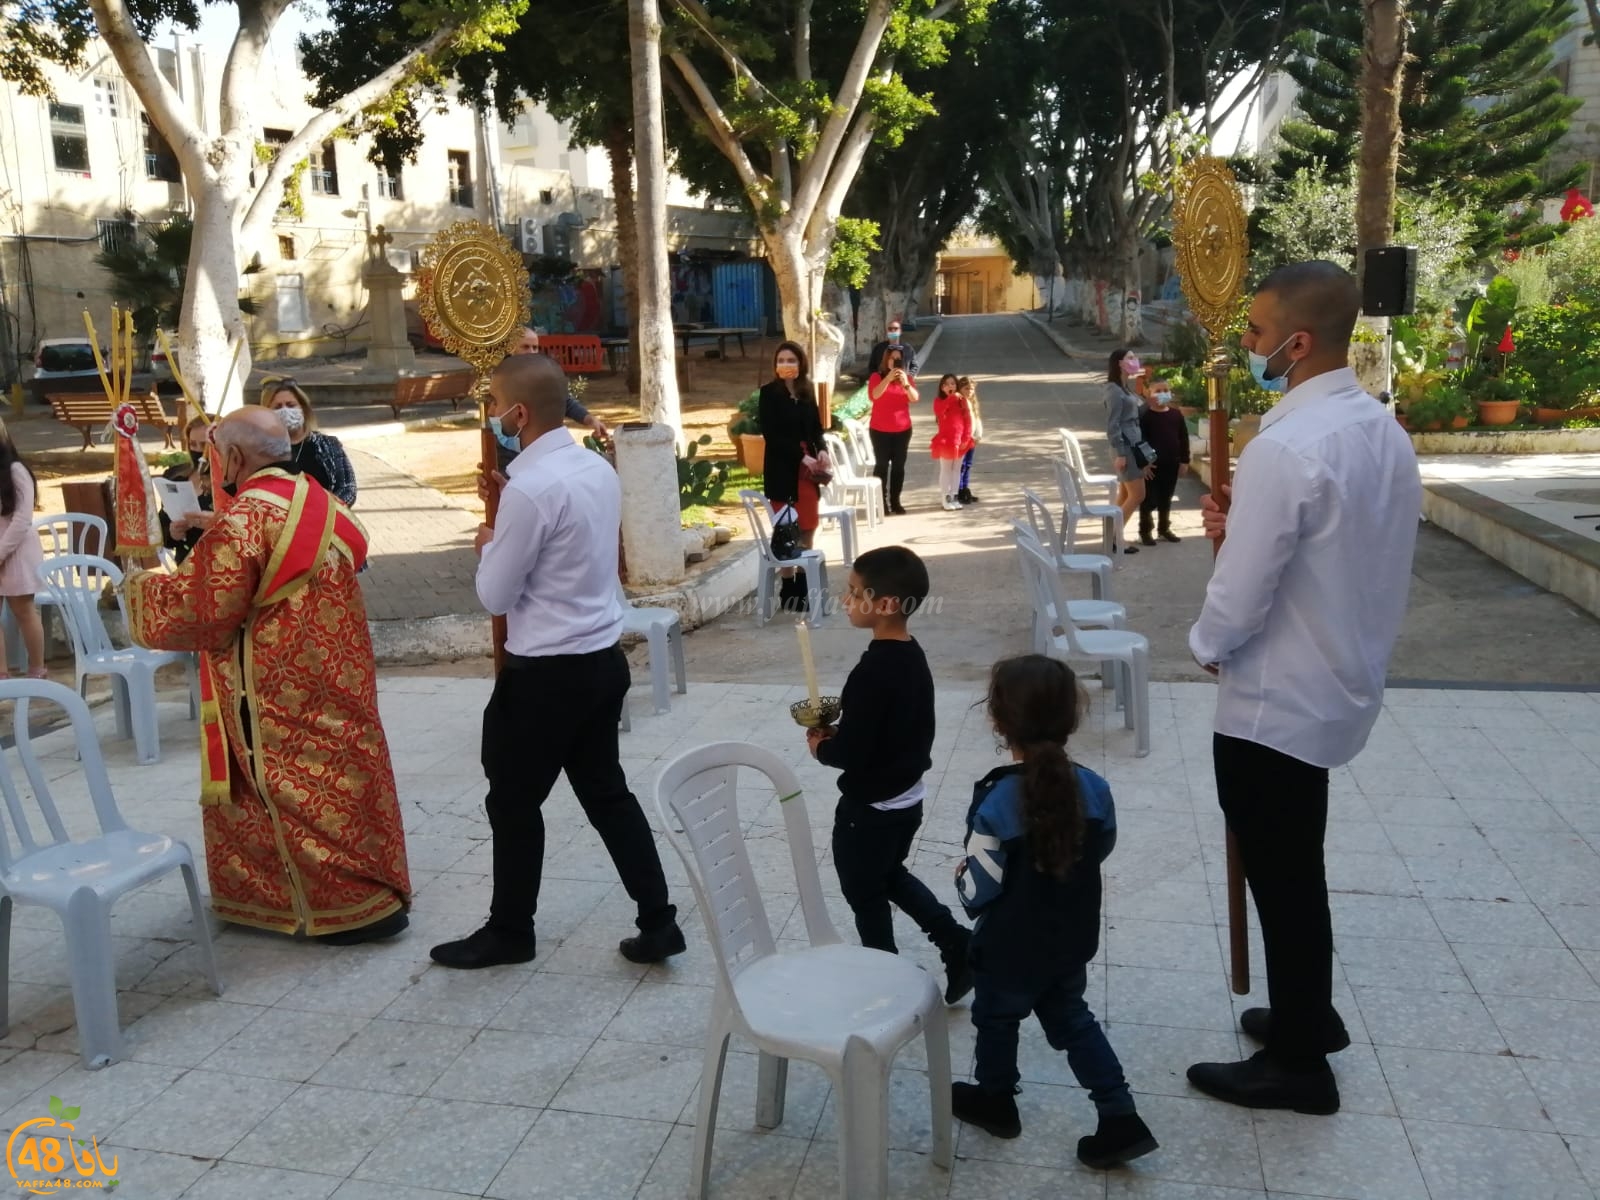 قداس احتفالي بمناسبة عيد الميلاد المجيد في كنيسةالقديس جوارجيوس بيافا